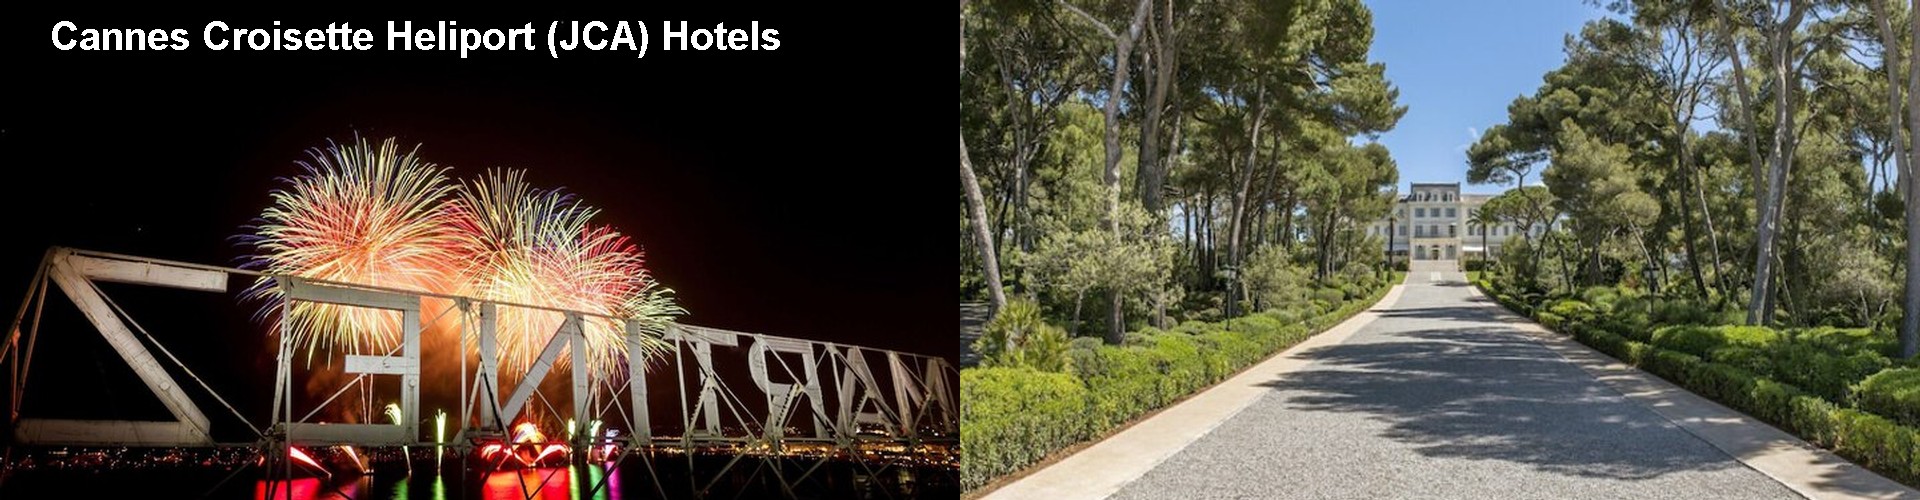 5 Best Hotels near Cannes Croisette Heliport (JCA)